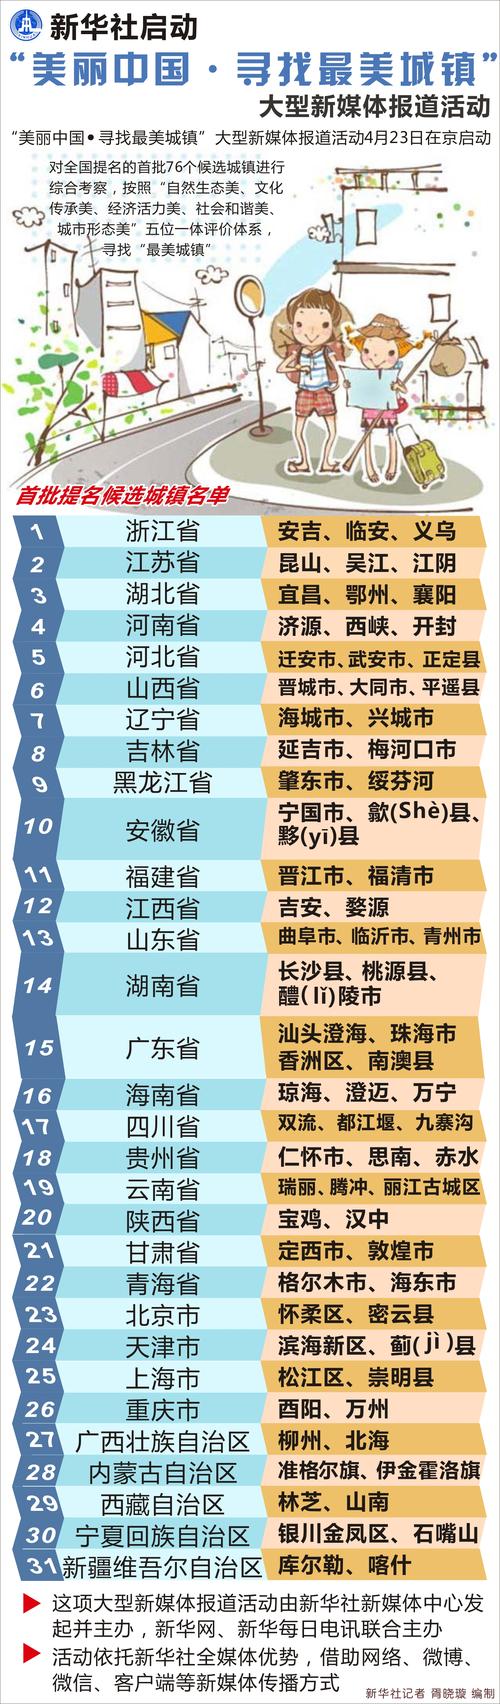 曲阜入选“中国最美城镇”首批提名候选城镇名单